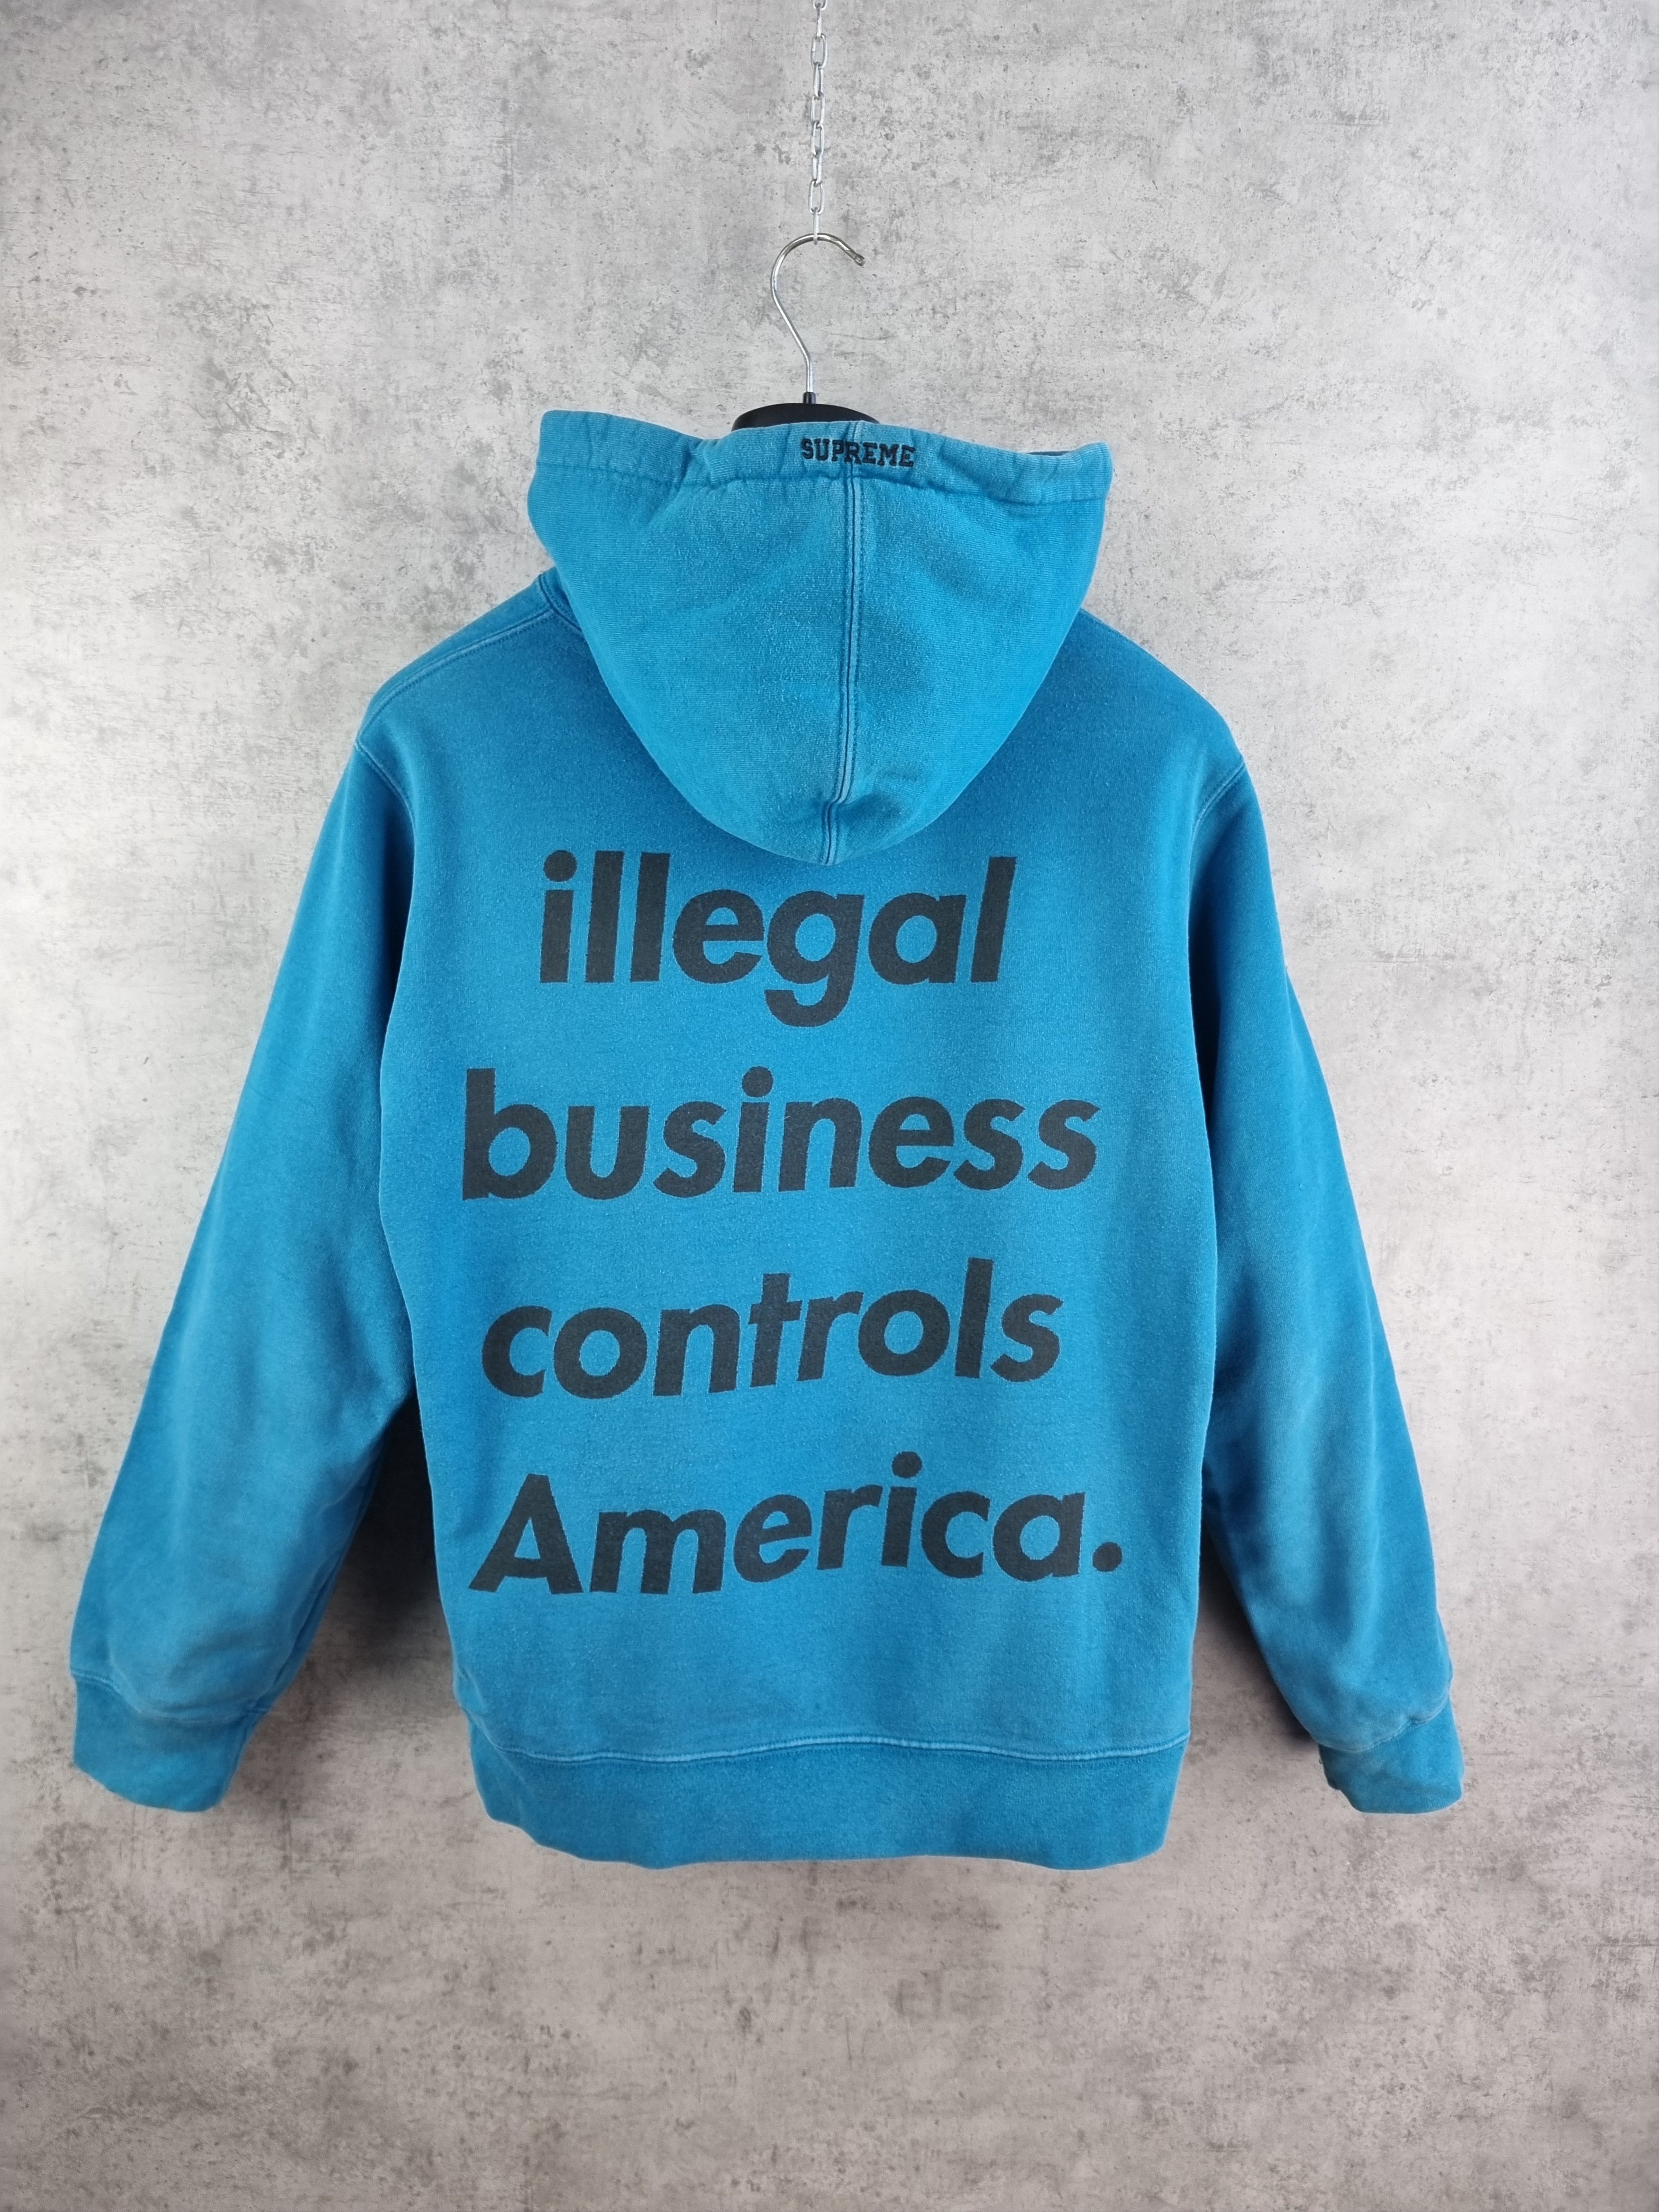 即購入もOKですSupreme-illegal business controlsAmerica